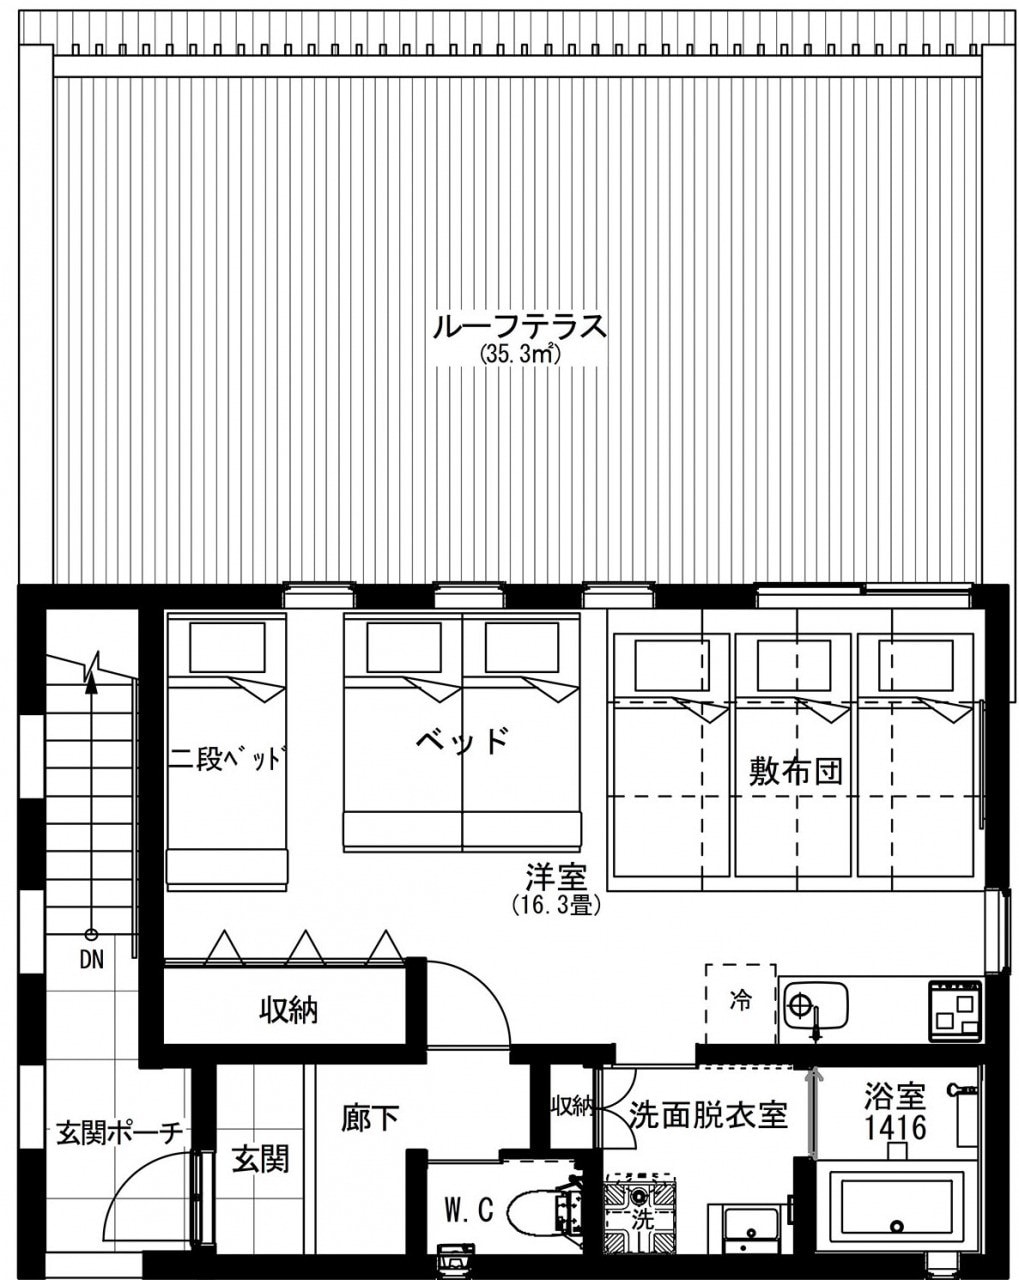 【H棟】愛犬宿泊可！Echigo-Yuzawa站步行约6分钟步行1层私人楼层， 39平方米房间+ 35平方米大屋顶露台